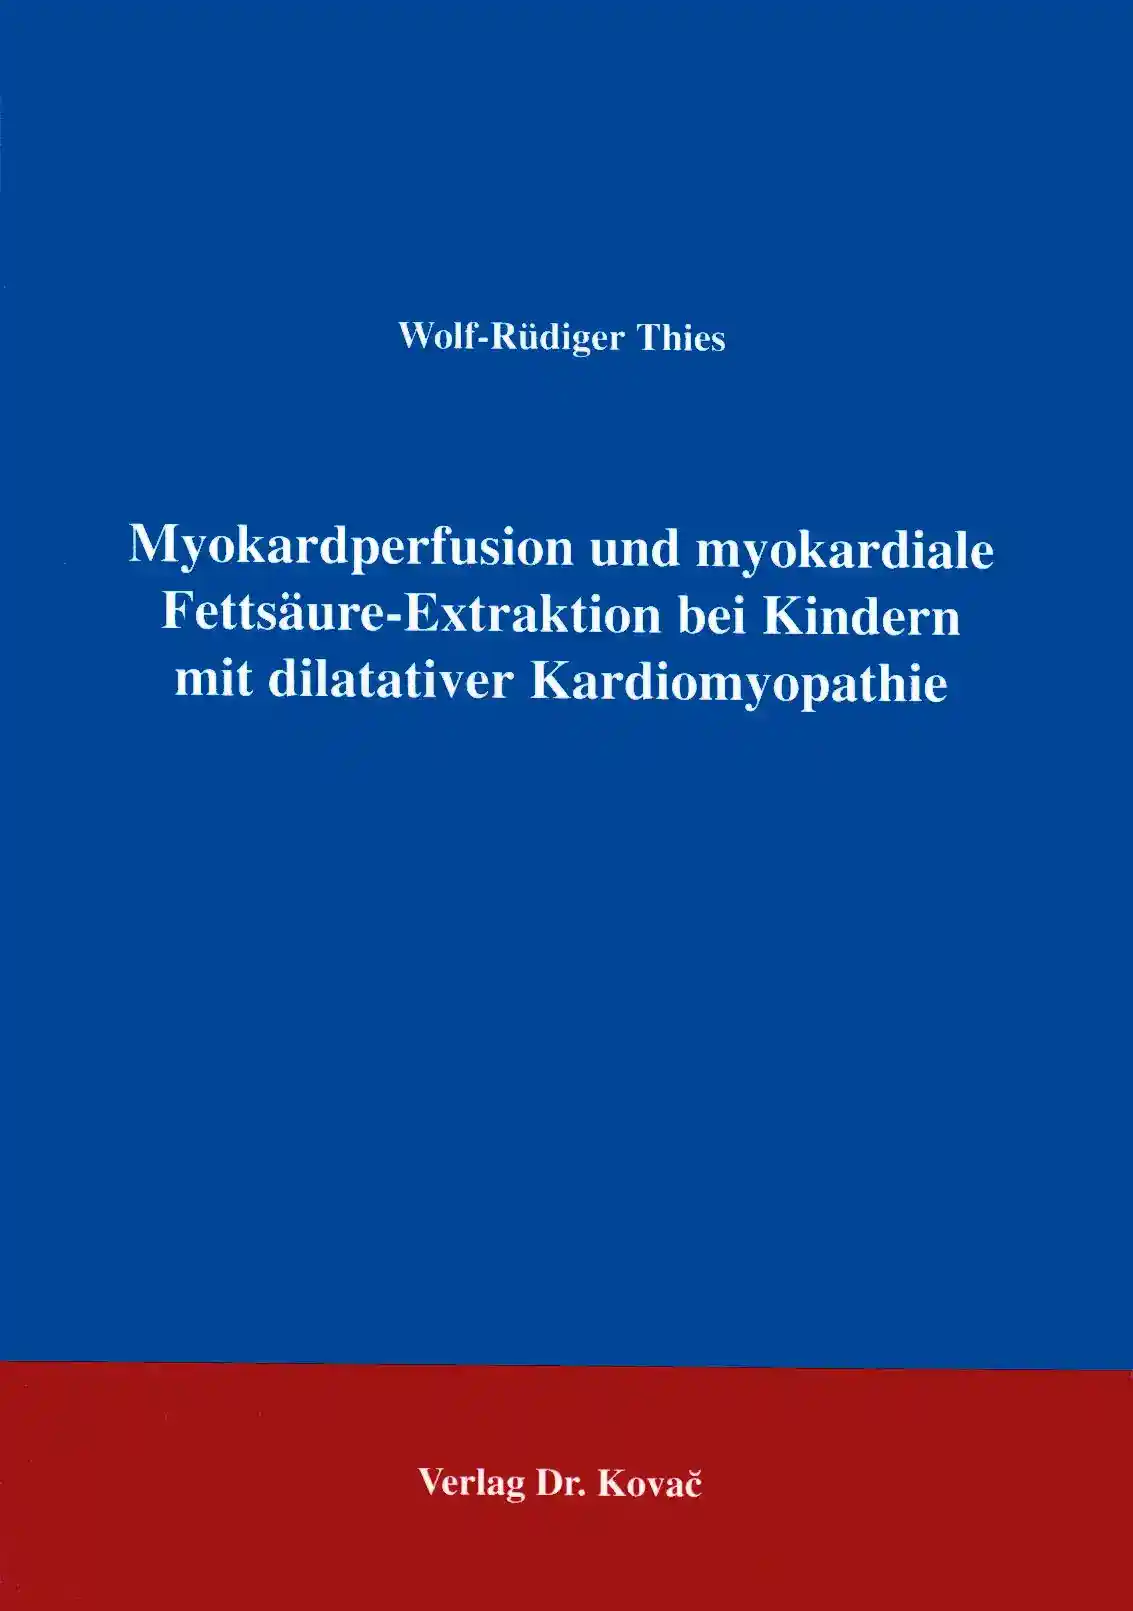  Forschungsarbeit: Myokardperfusion und myokardiale FettsäureExtraktion bei Kindern mit dilatativer Kardiomyopathie